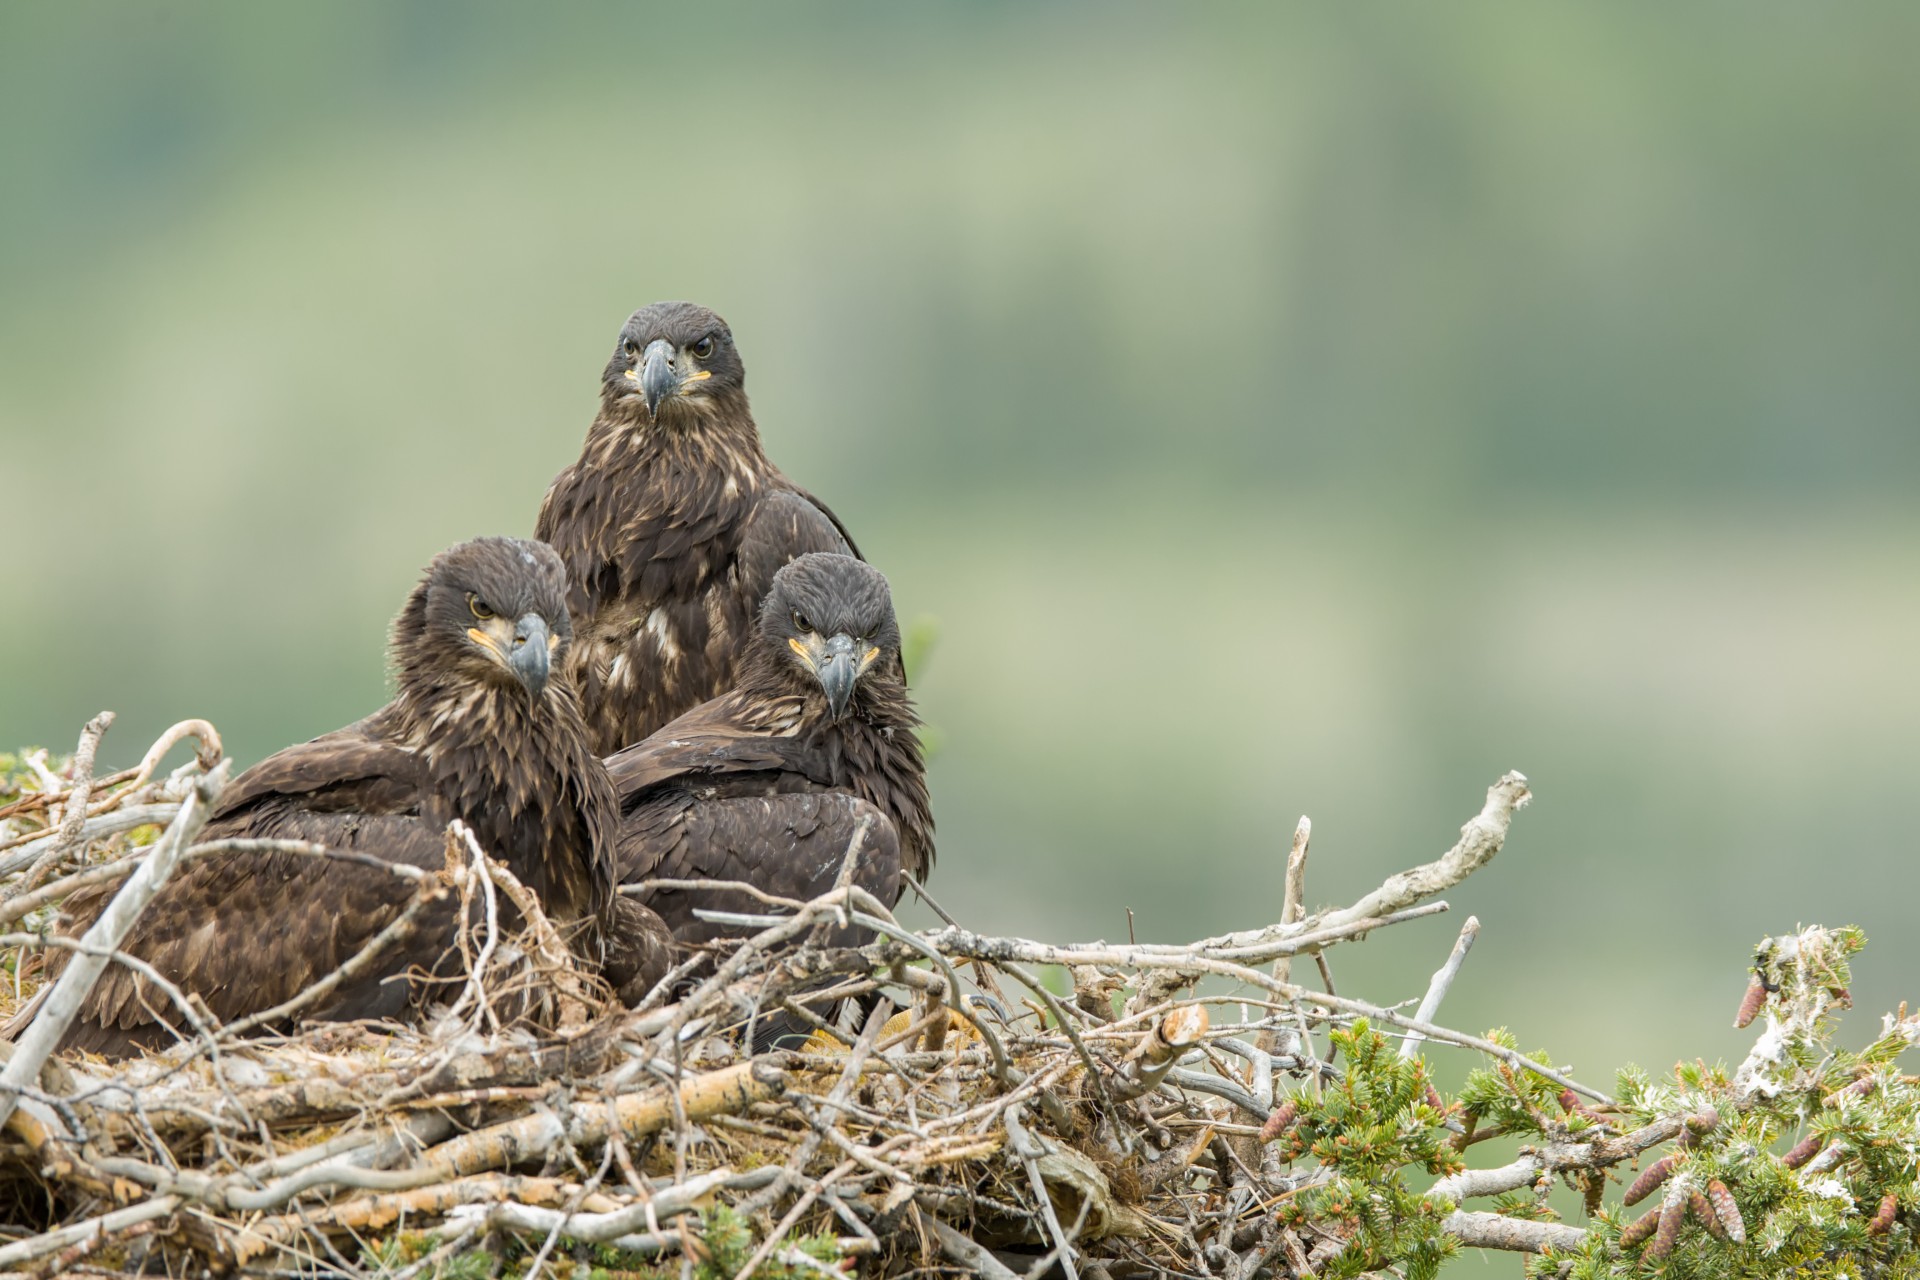 Juvenile bald eagles in nest